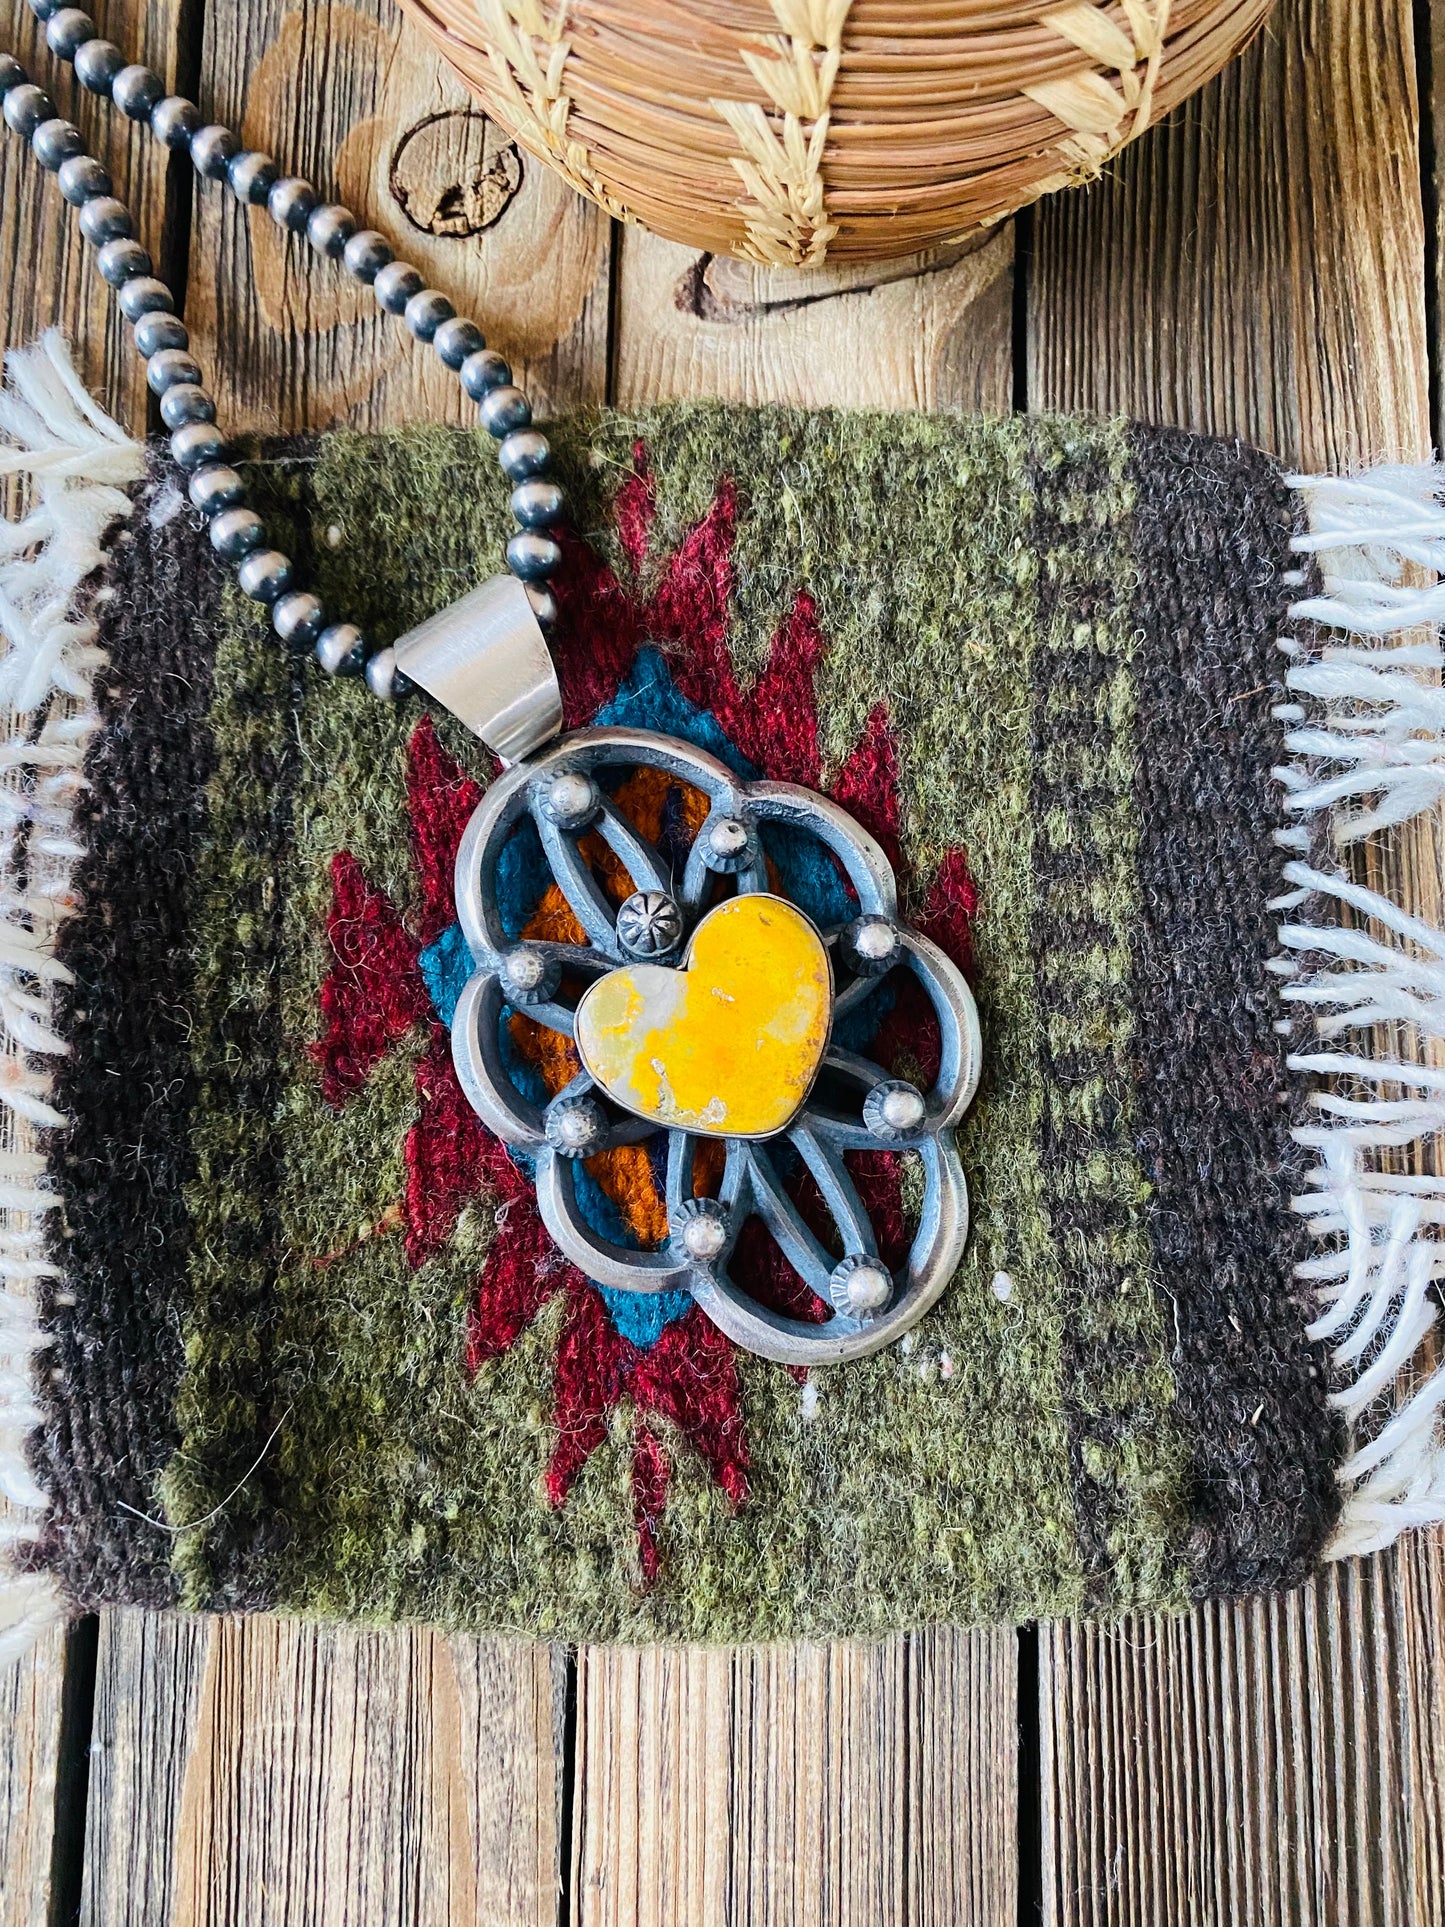 Navajo Sterling Silver & Bumblebee Jasper Heart Pendant By Chimney Butte